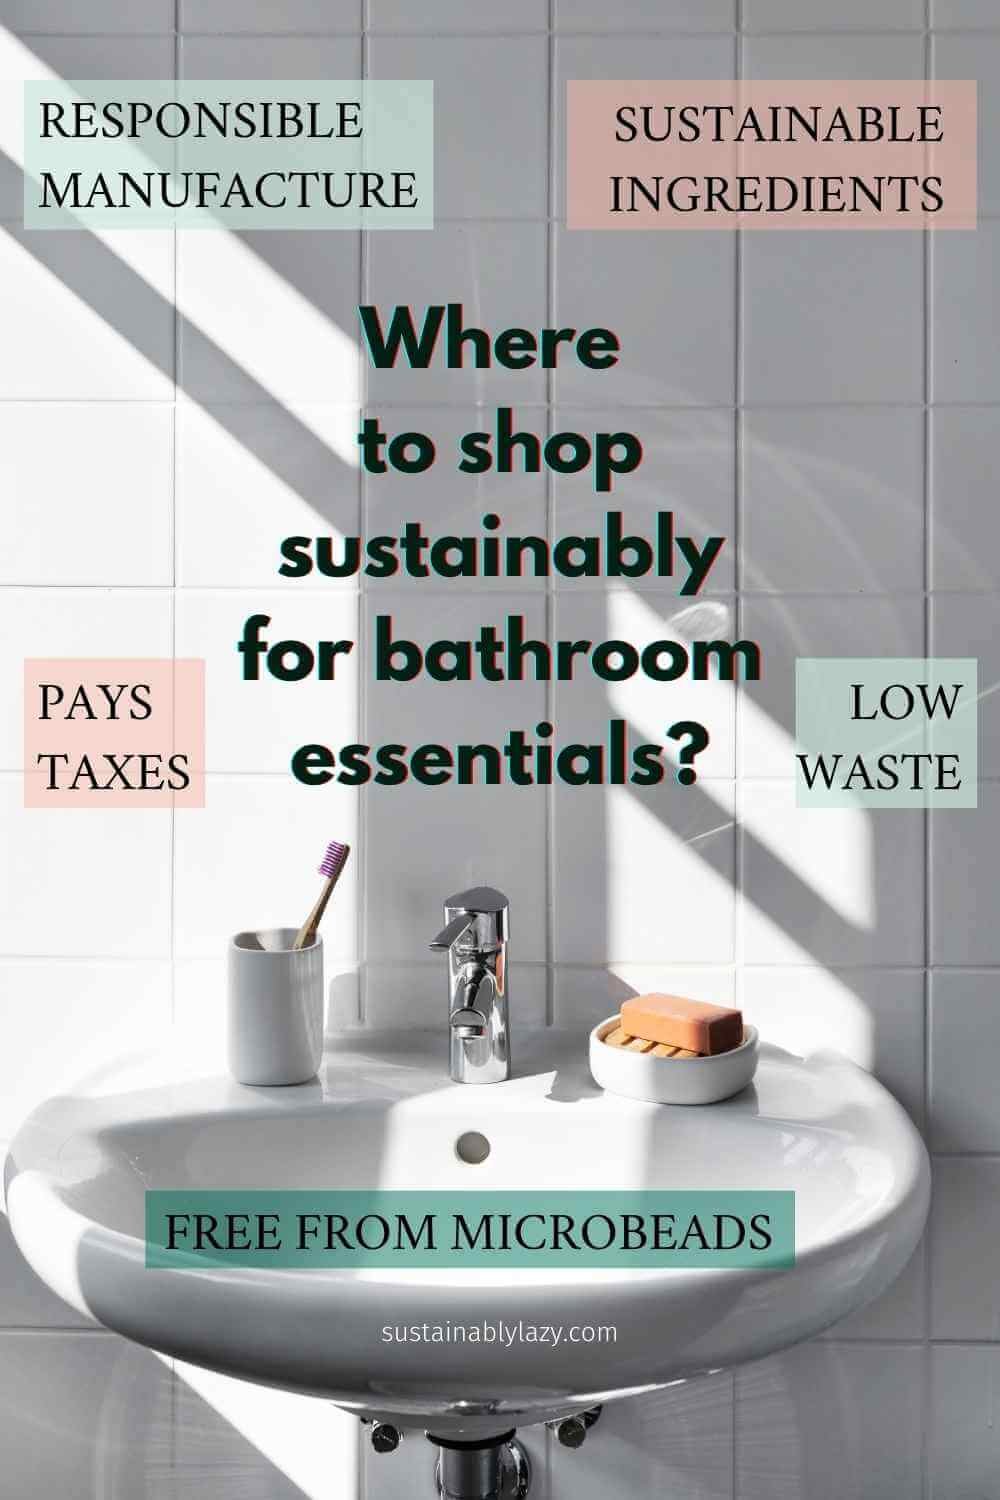 ZWS Essentials Pot Scrubber - Eco Friendly Scrub Brush - ZWS